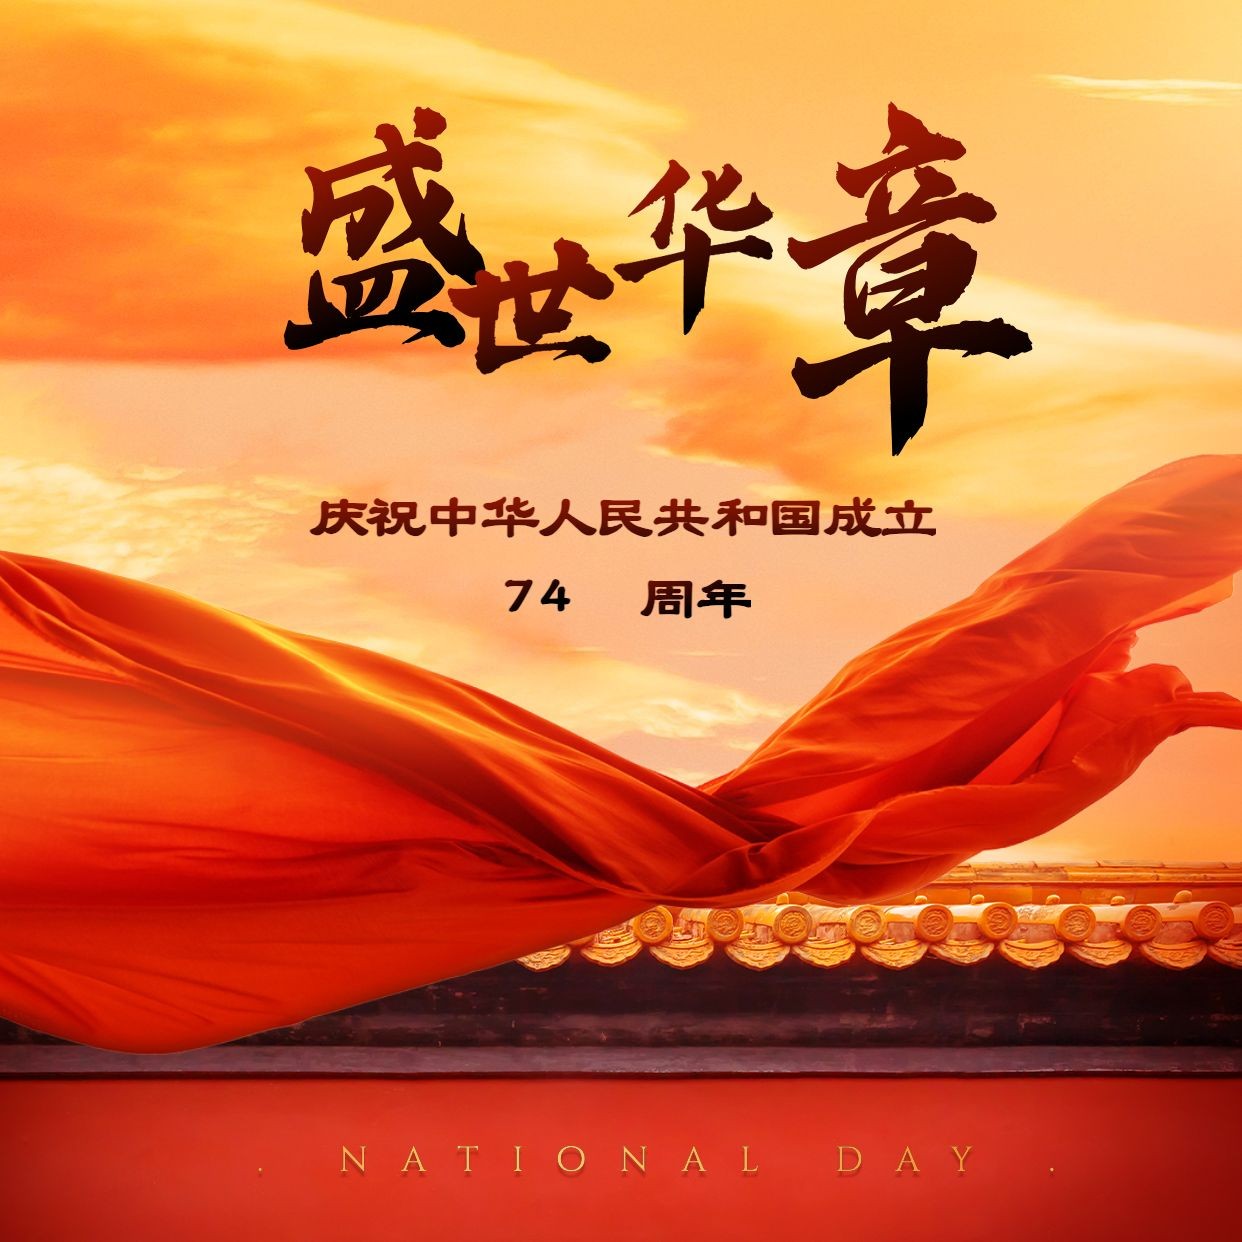 国庆节祝福红绸实景方形海报